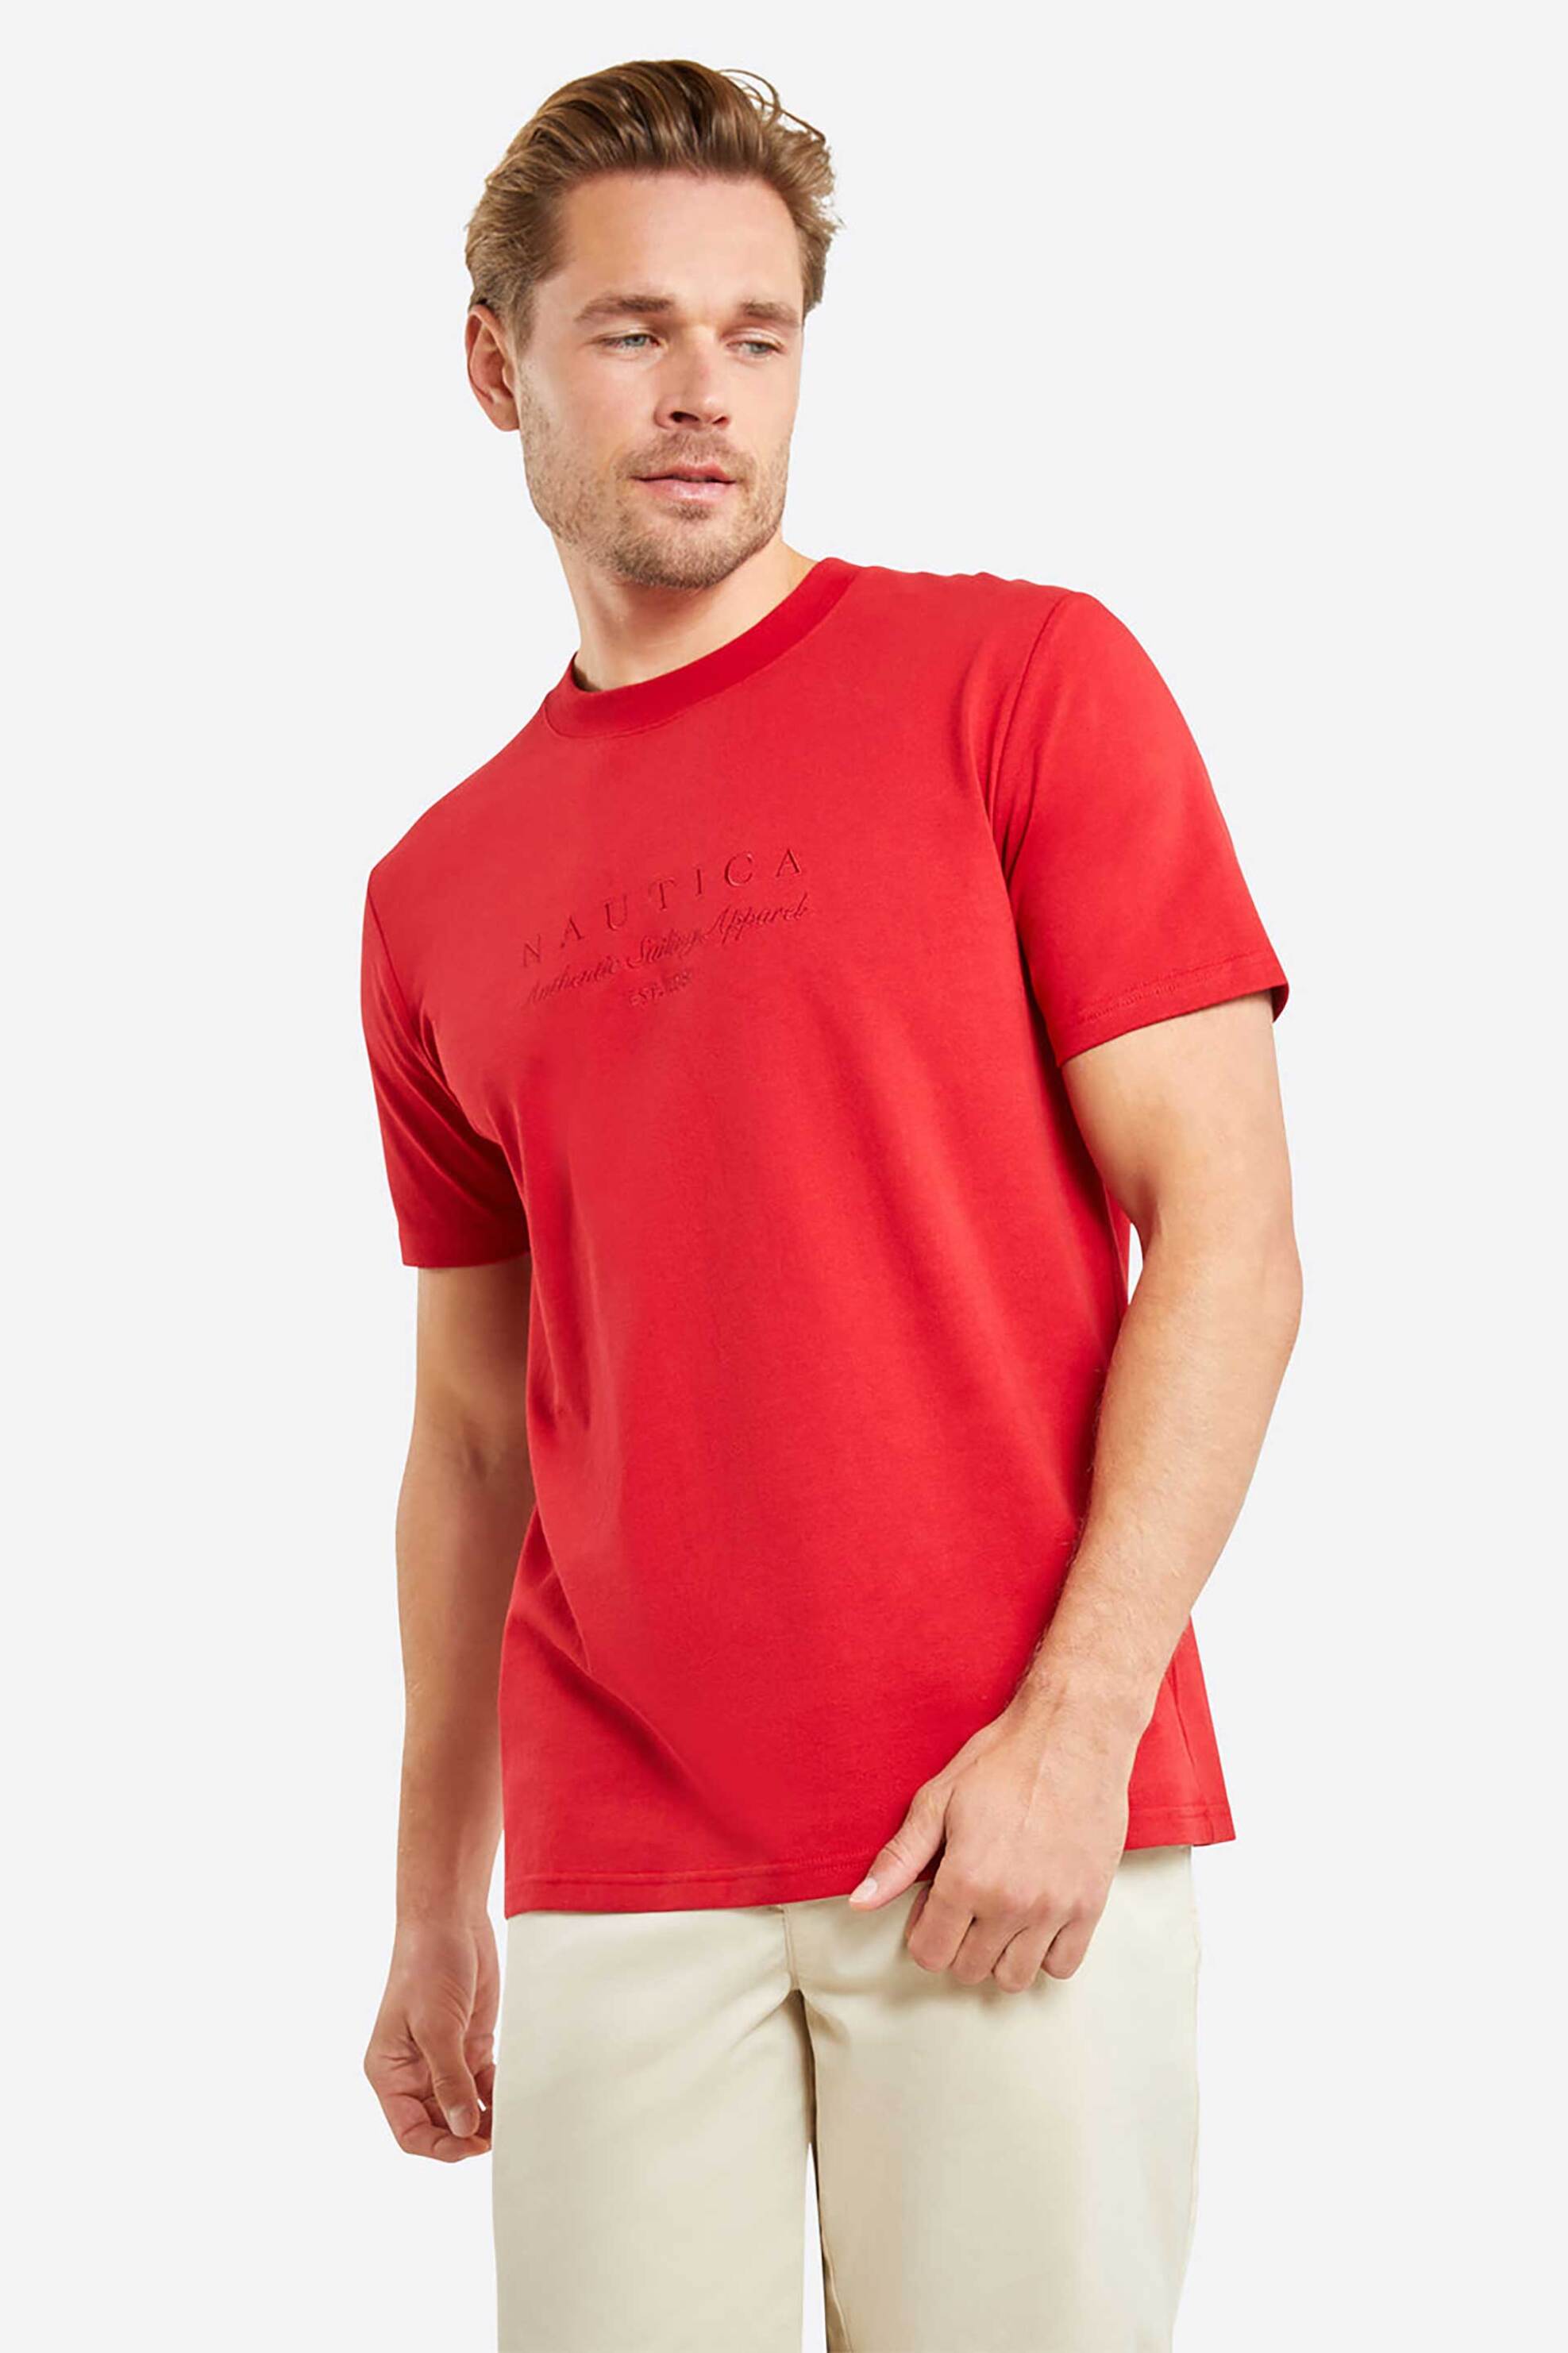 Ανδρική Μόδα > Ανδρικά Ρούχα > Ανδρικές Μπλούζες > Ανδρικά T-Shirts Nautica ανδρικό T-shirt μονόχρωμο βαμβακερό με tone-on-tone κεντημένο λογότυπο "Carnegie" - N1M01711 Κόκκινο